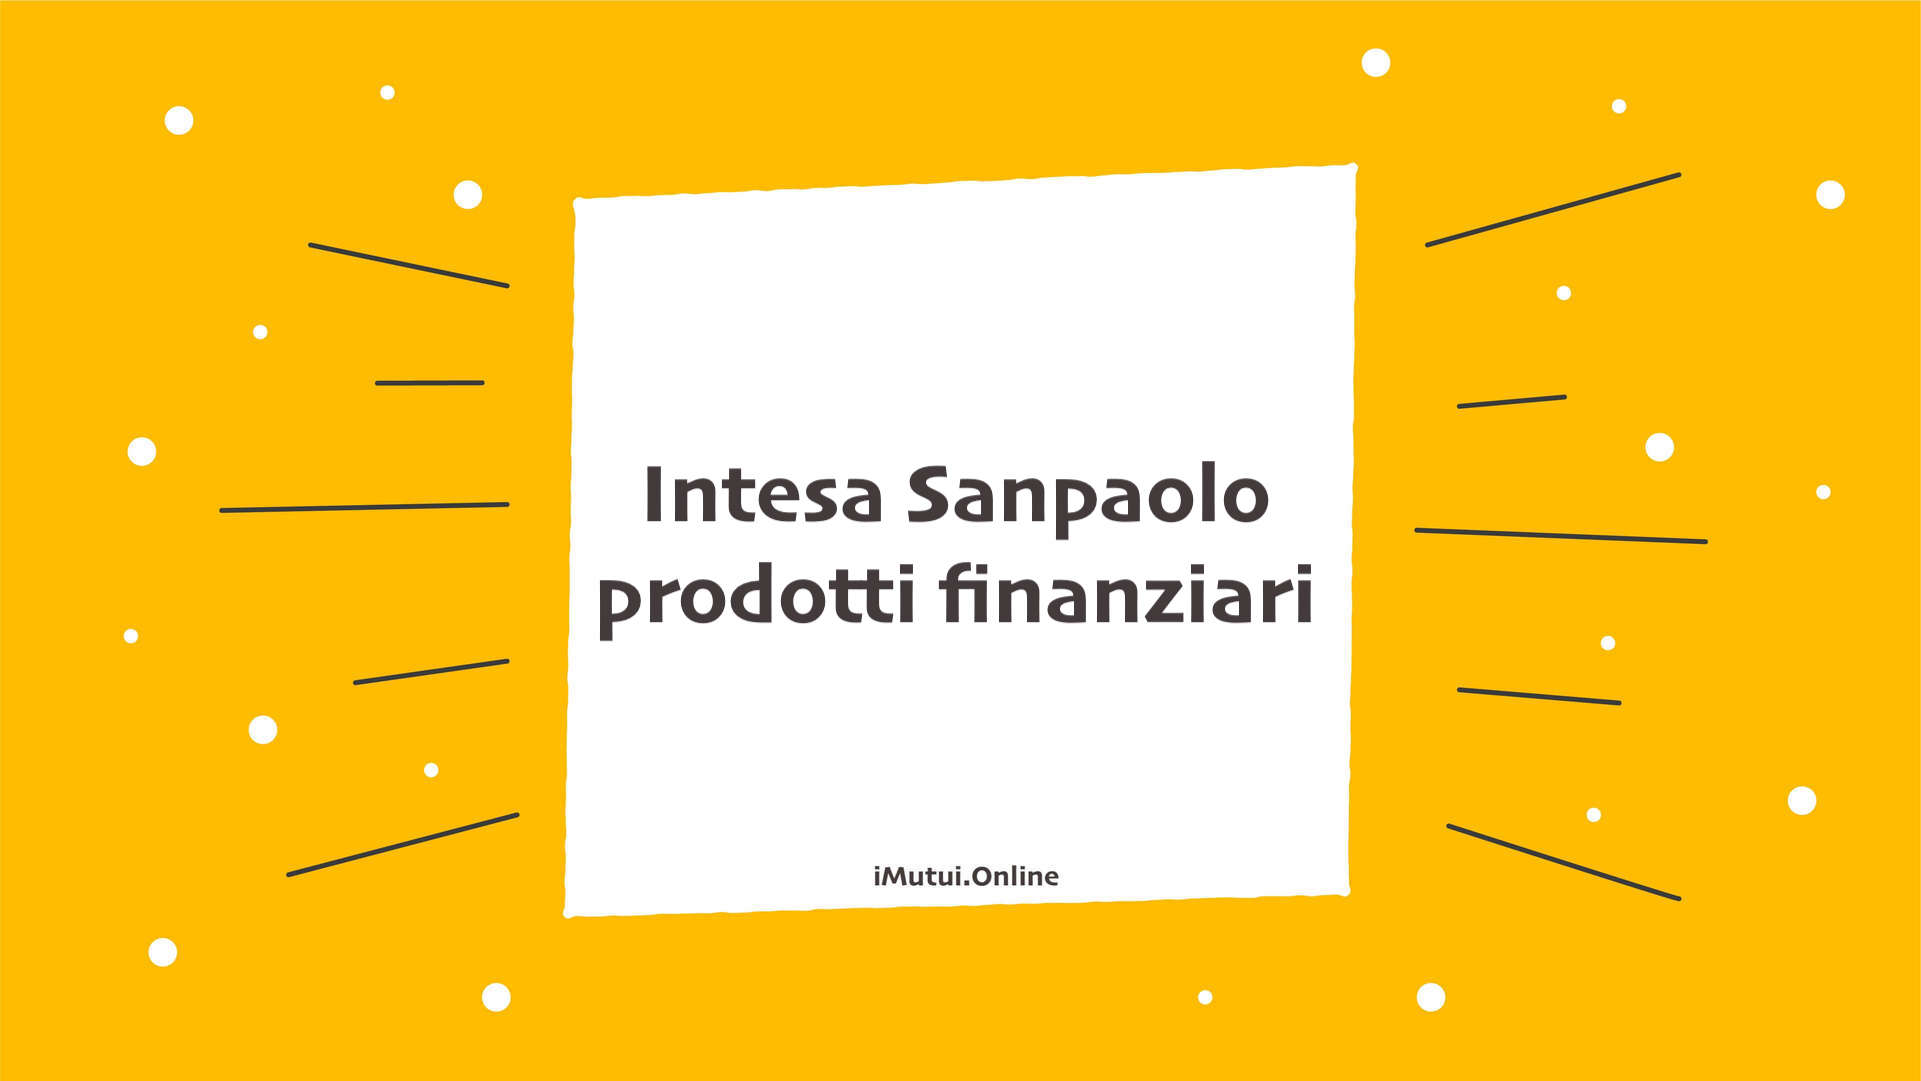 Intesa Sanpaolo prodotti finanziari